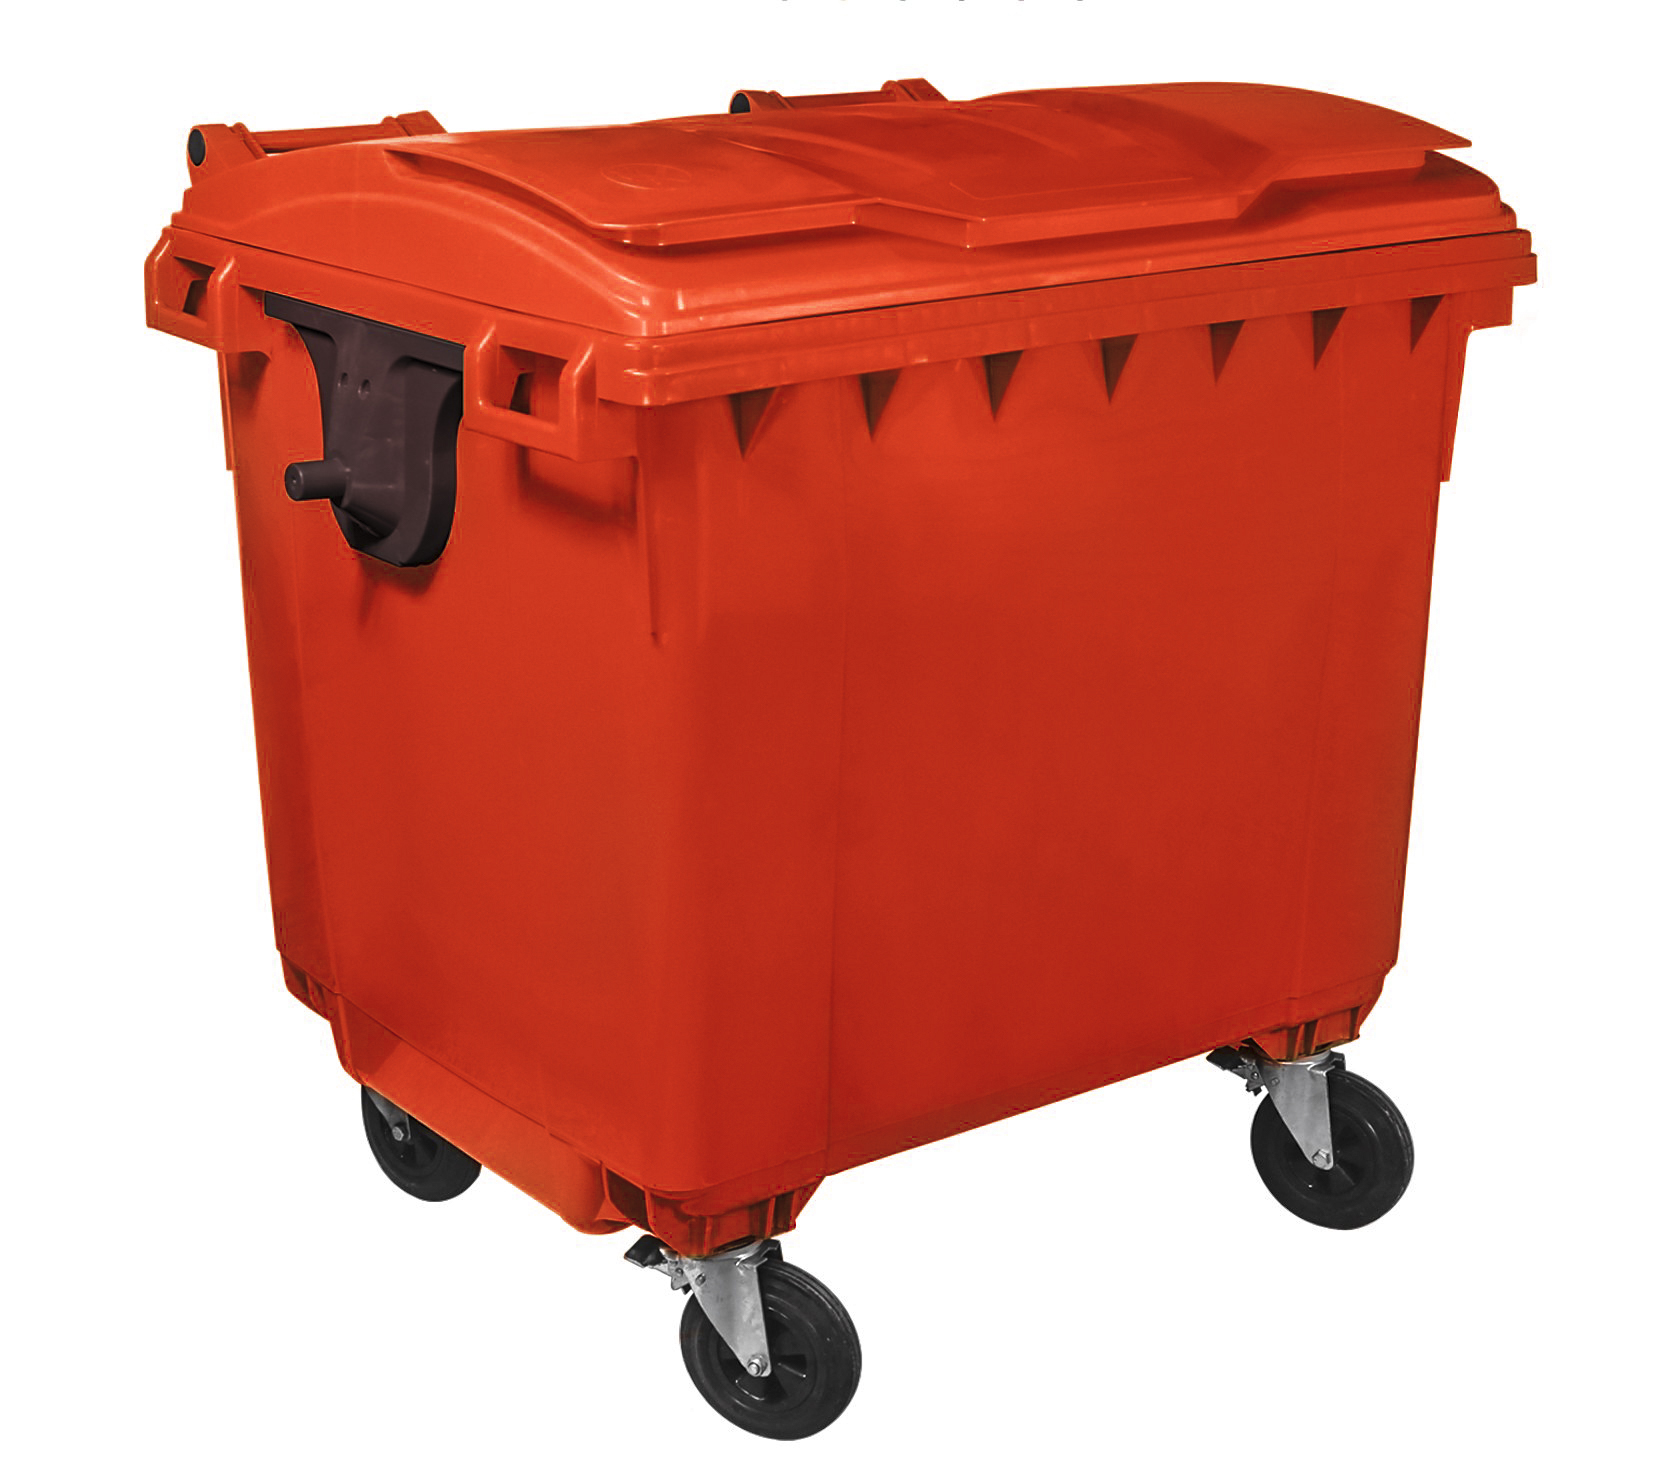 Container HDPE CLF 1100L cu capac plat rosu – Transport inclus 1100L